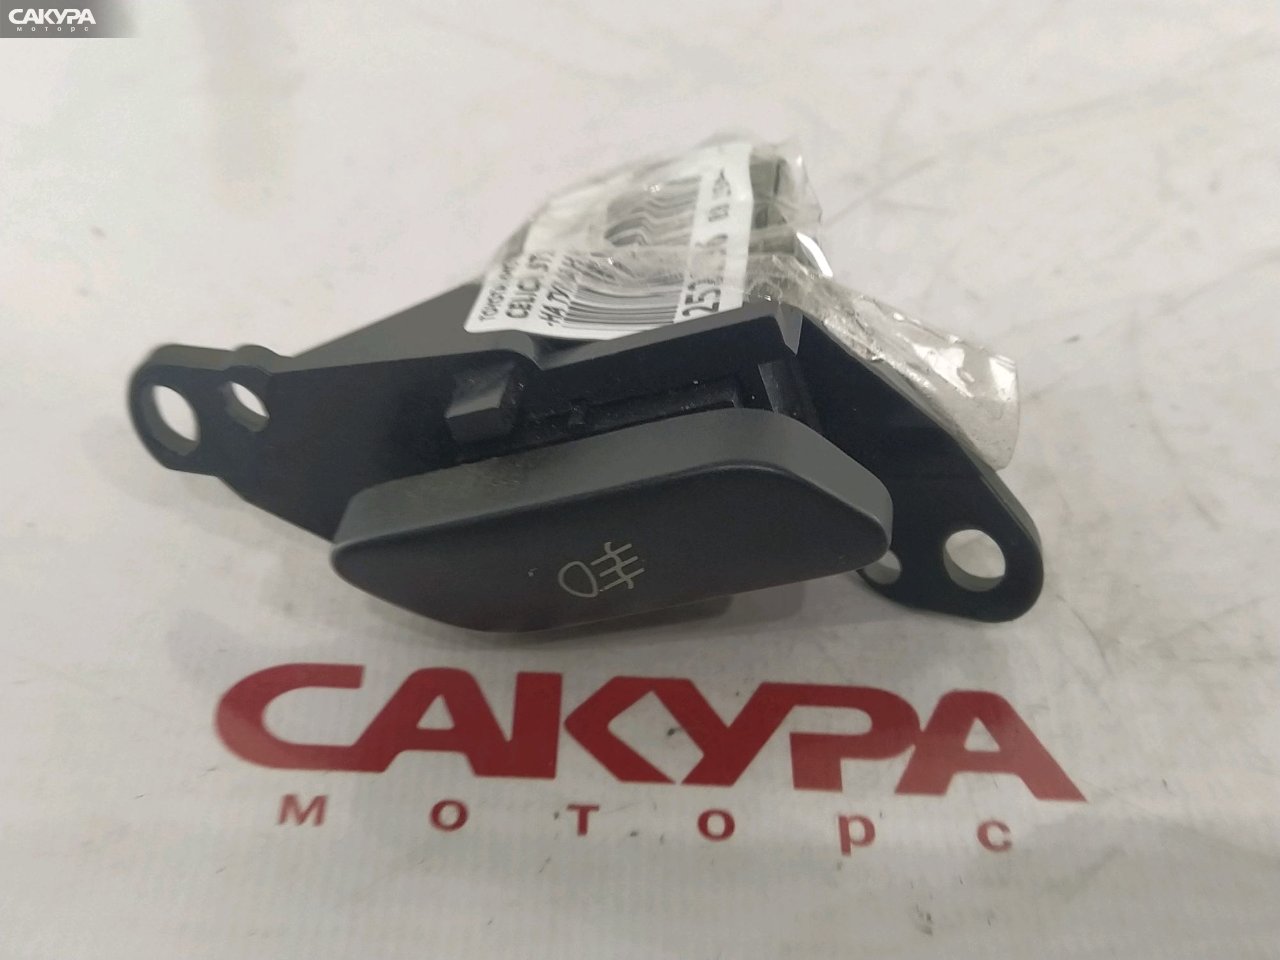 Кнопка включения противотуманных фар Toyota Celica ST182: купить в Сакура Красноярск.